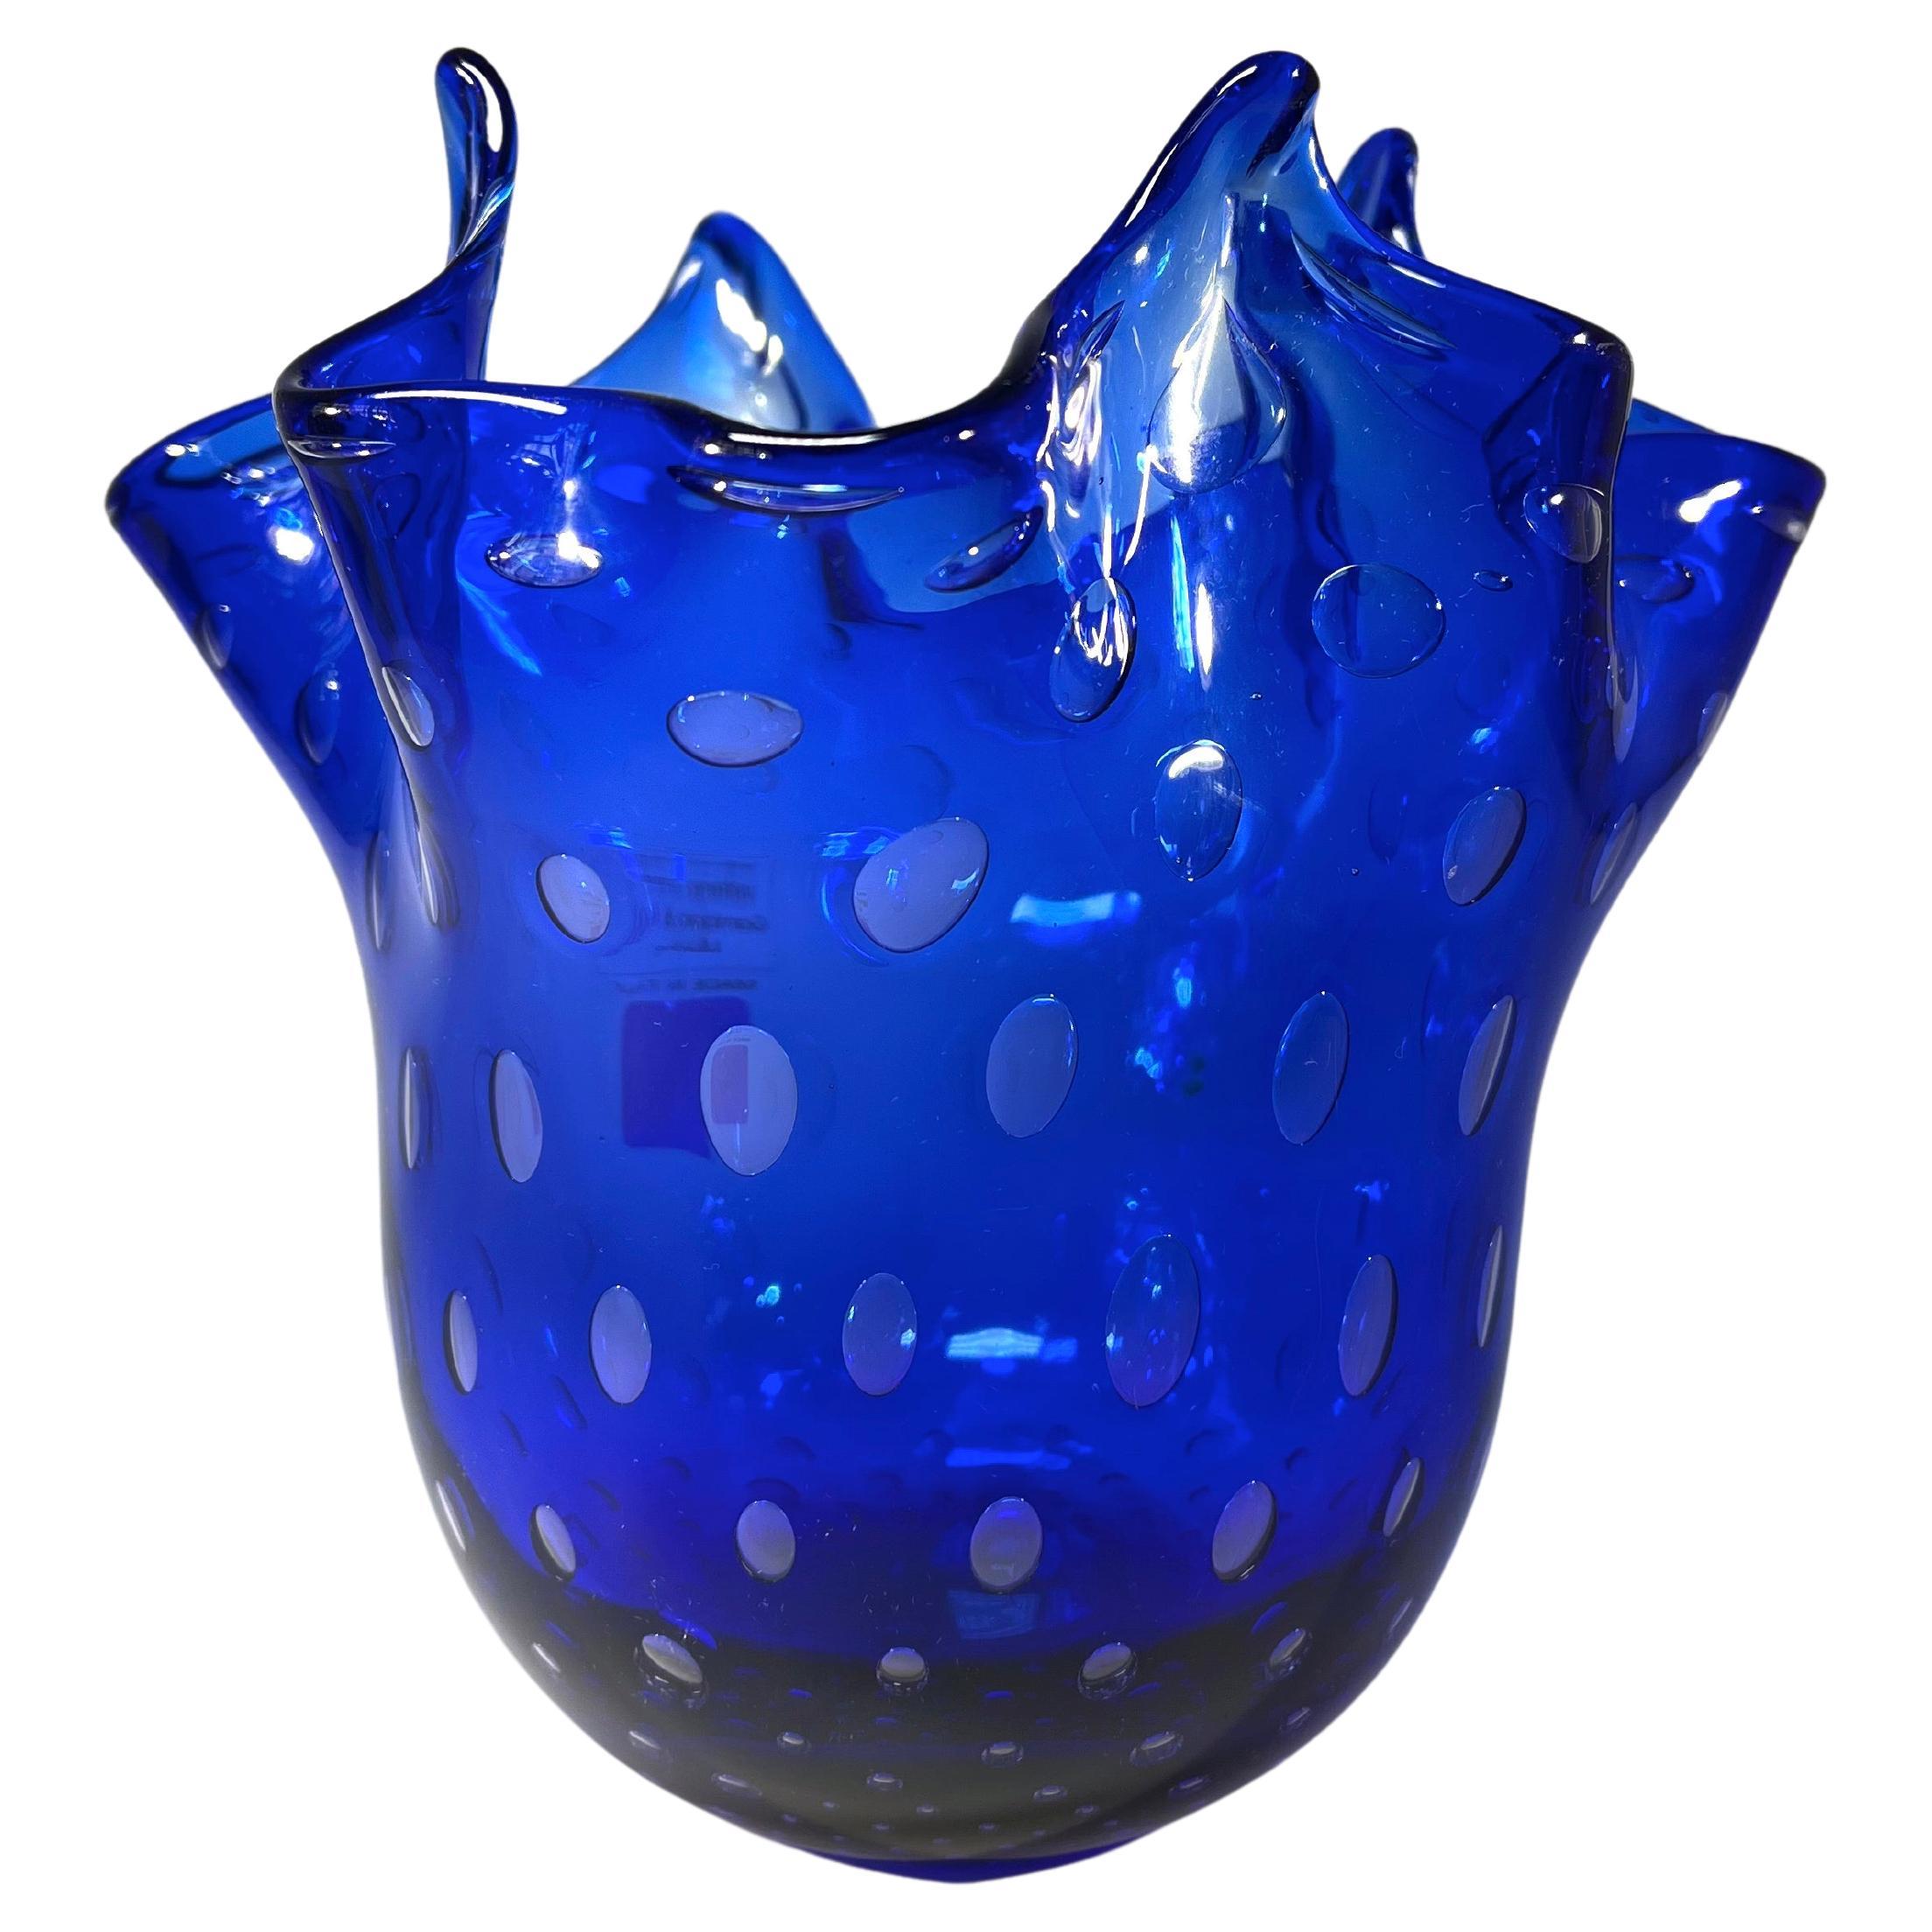 Auffallend Lapislazuli Blau, Gambaro & Poggi Murano Glas Taschentuch Vase 